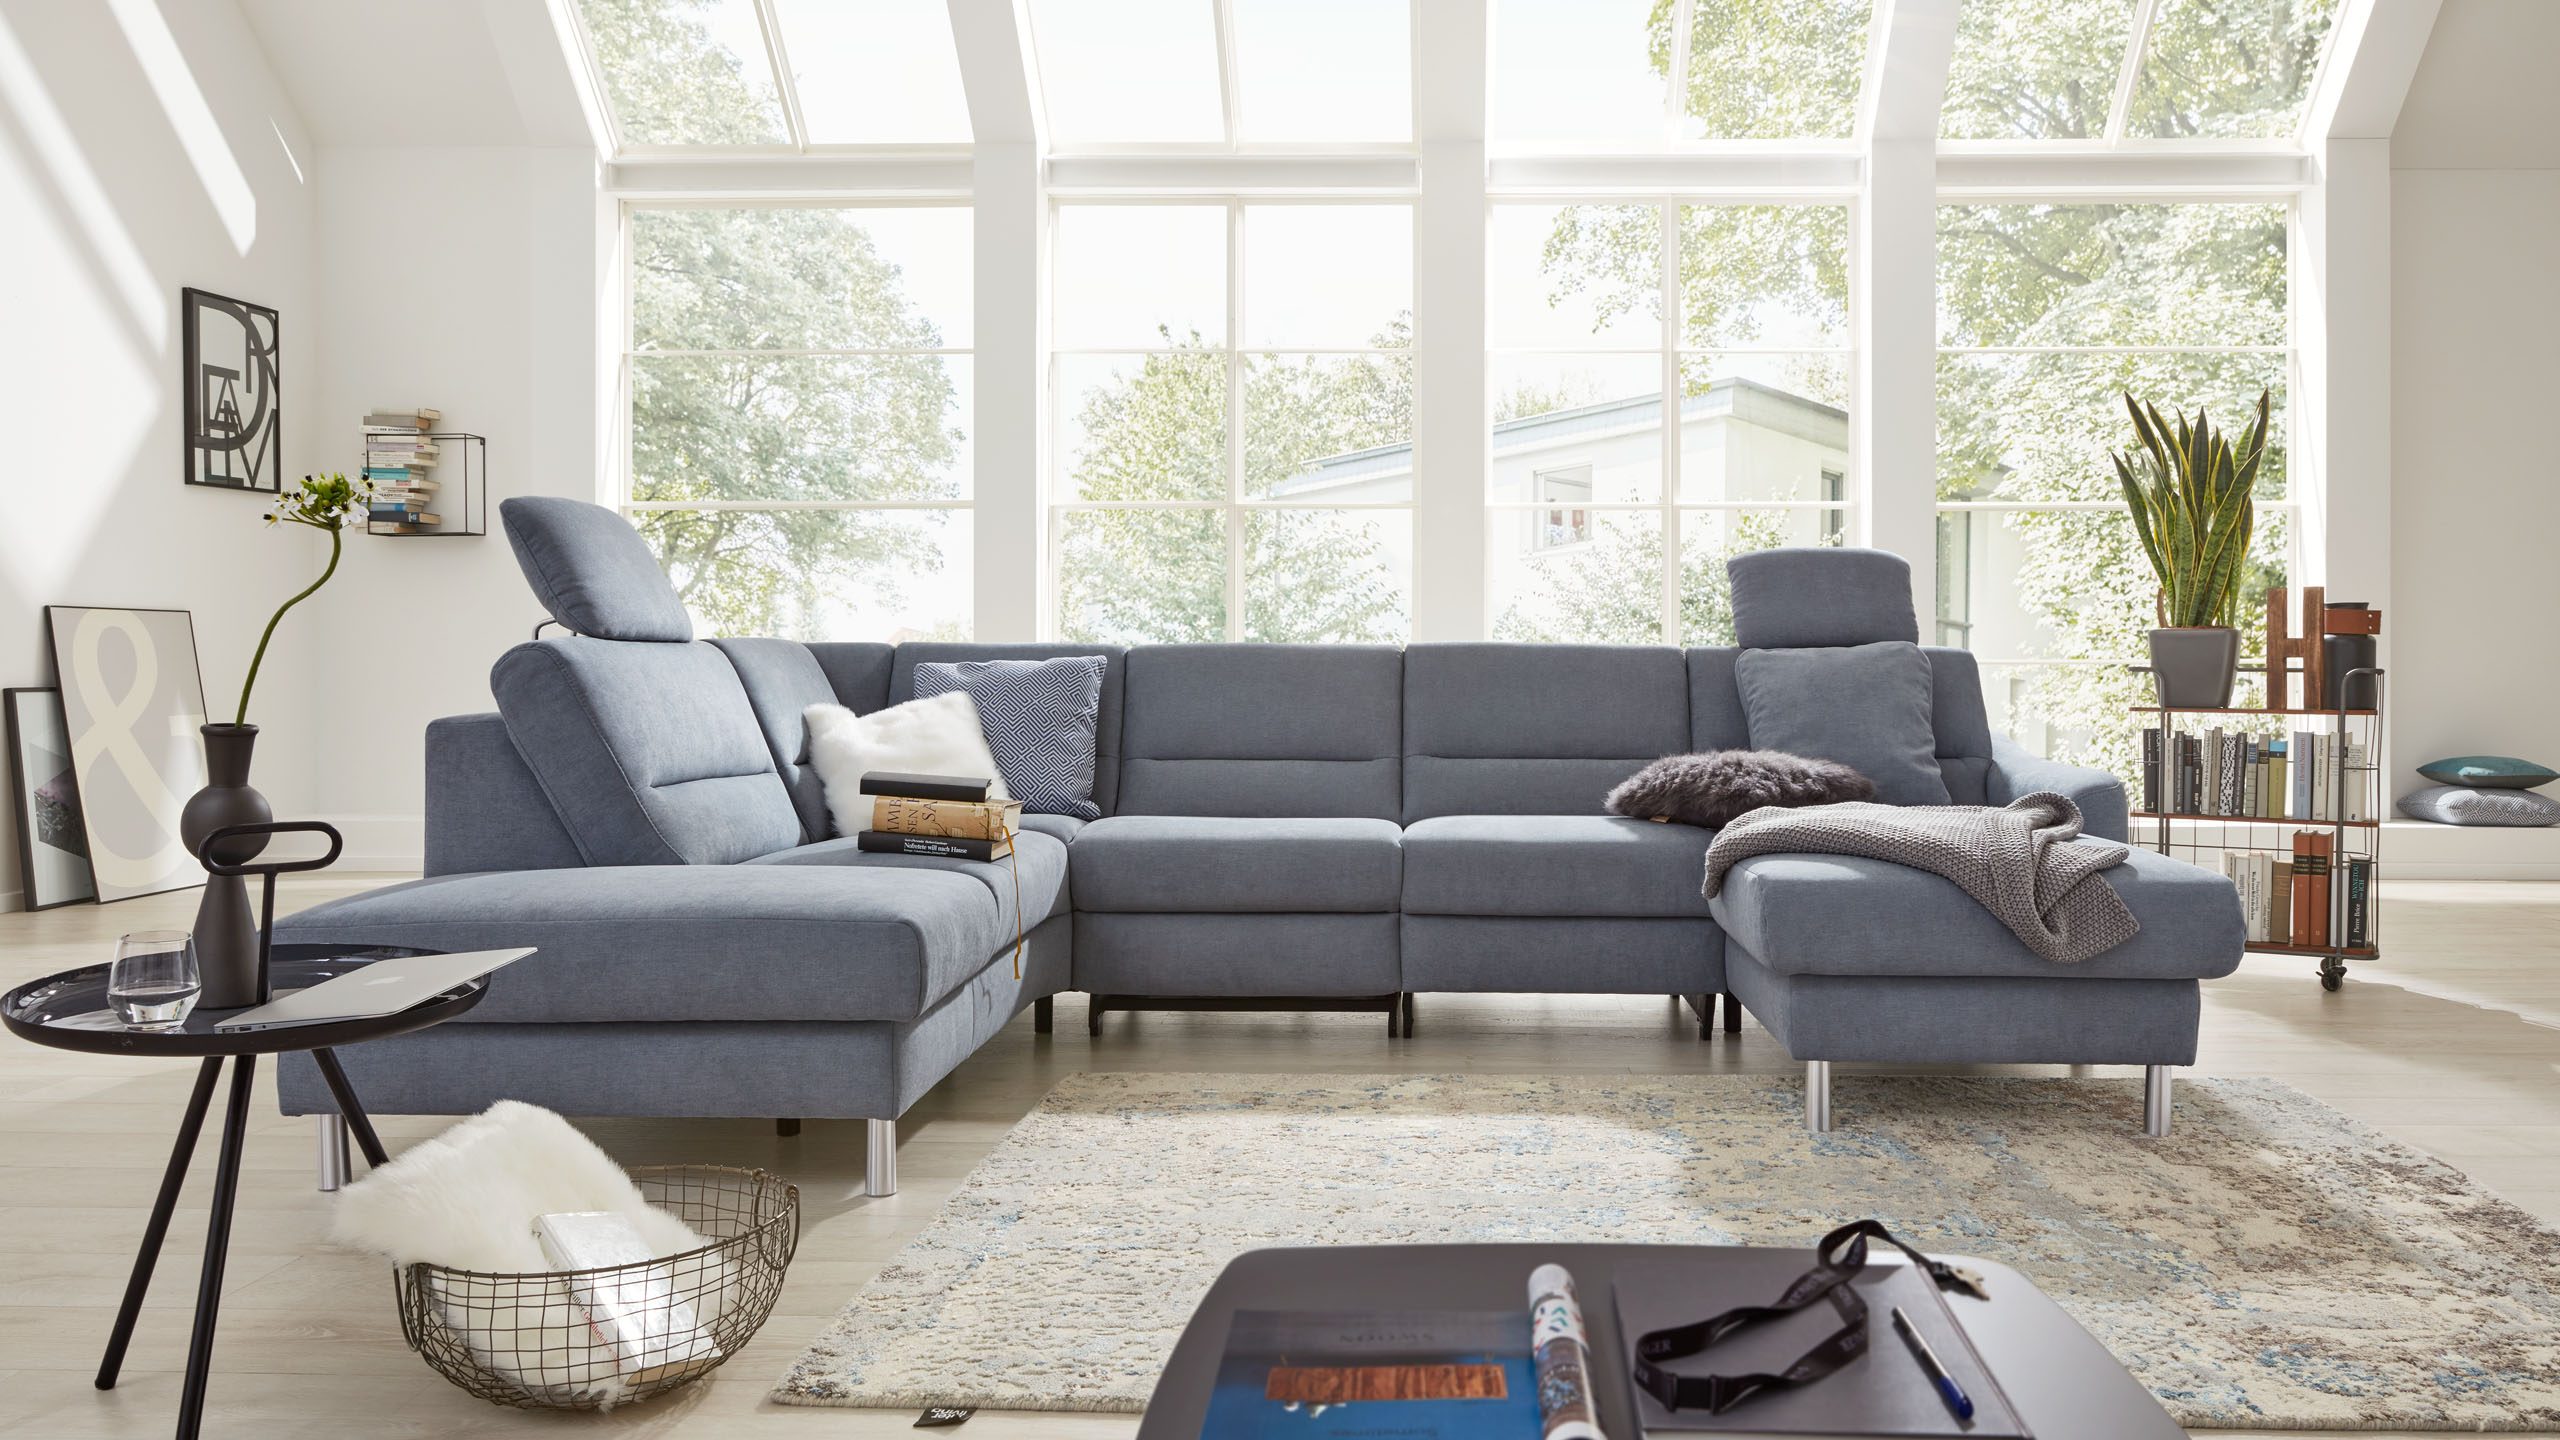 Interliving Sofa Serie 4305 steht in einem lichtdurchfluteten Wohnzimmer